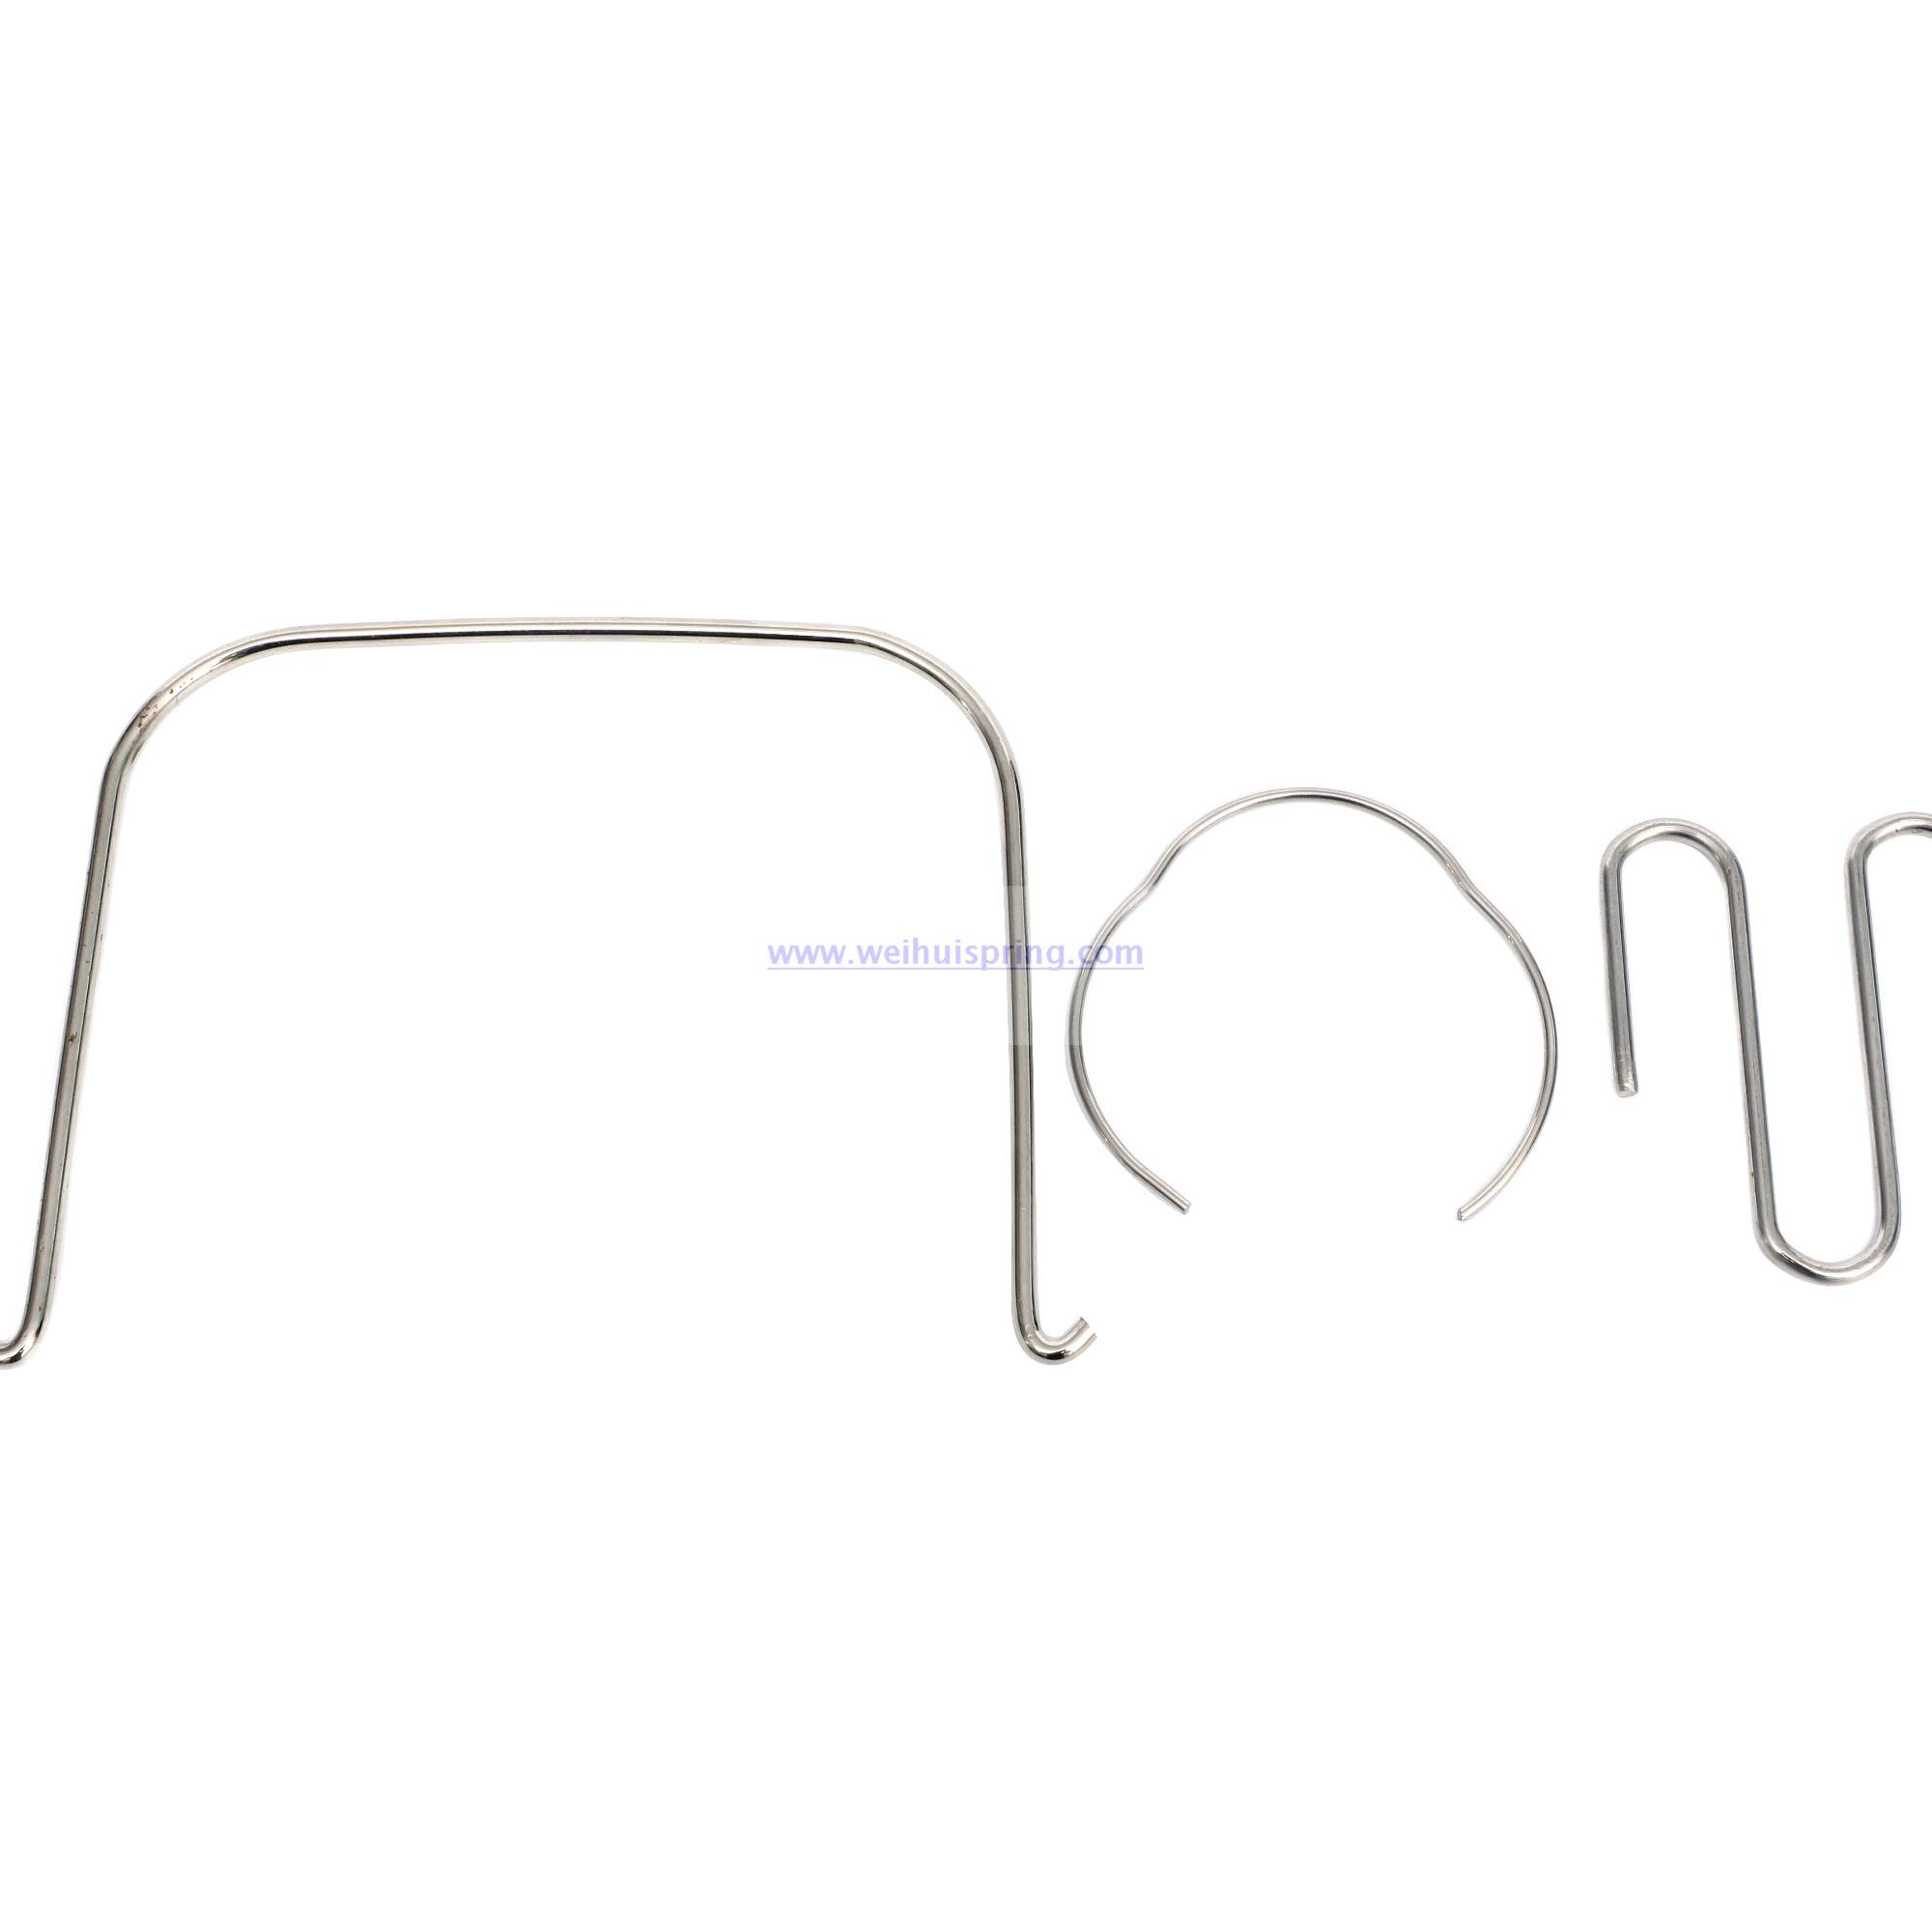 Custom Any Shapr Door Bending Shrapnel, Bend Wire Spring